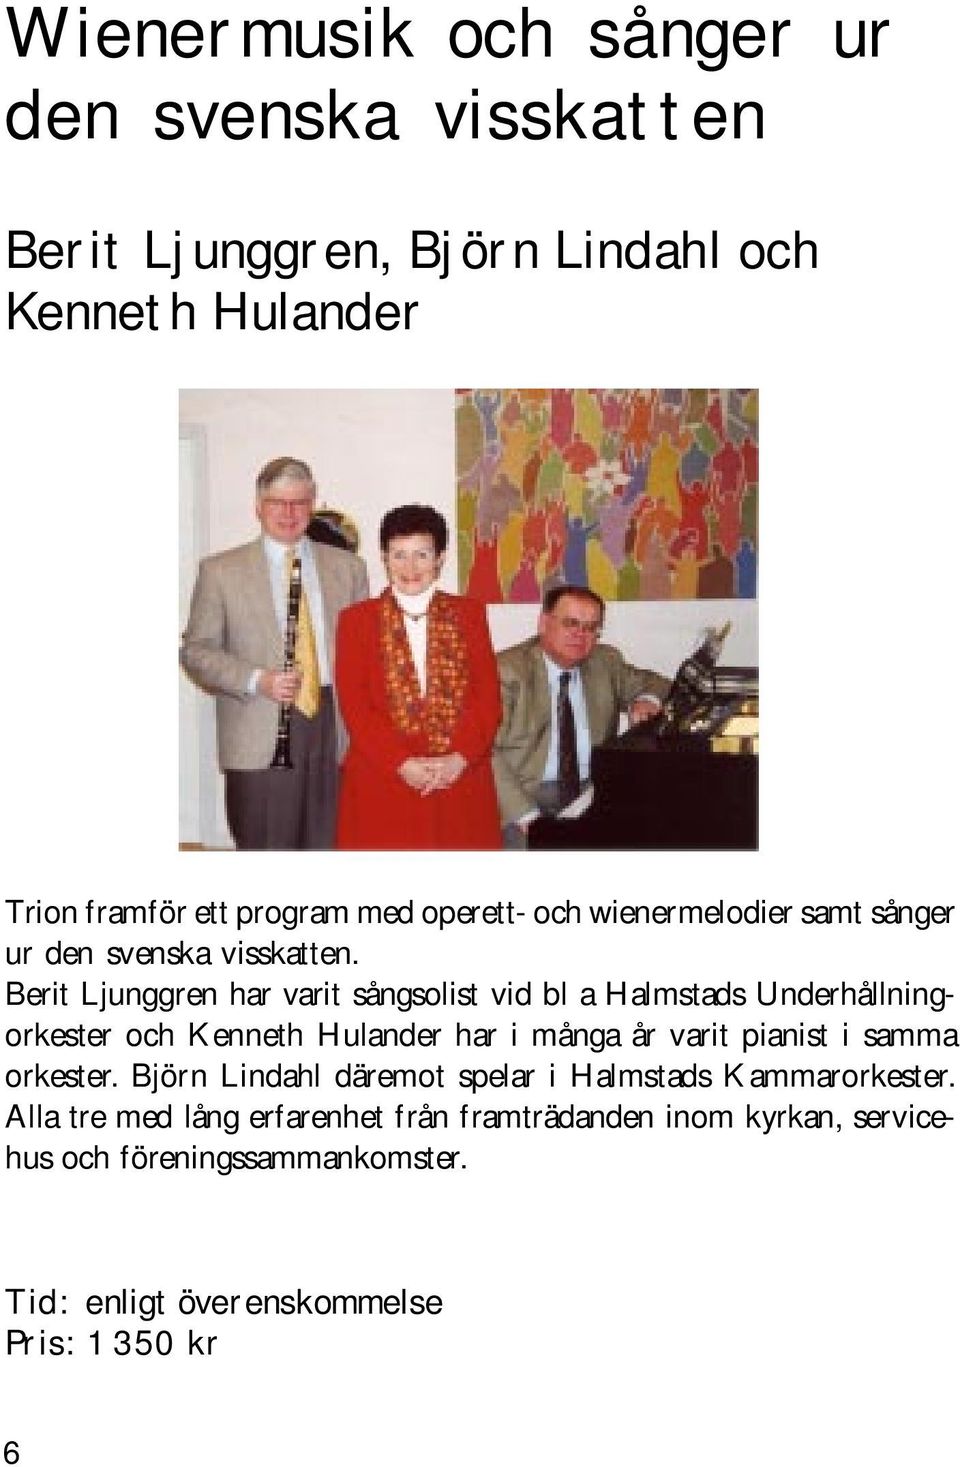 Berit Ljunggren har varit sångsolist vid bl a Halmstads Underhållningorkester och Kenneth Hulander har i många år varit pianist i samma